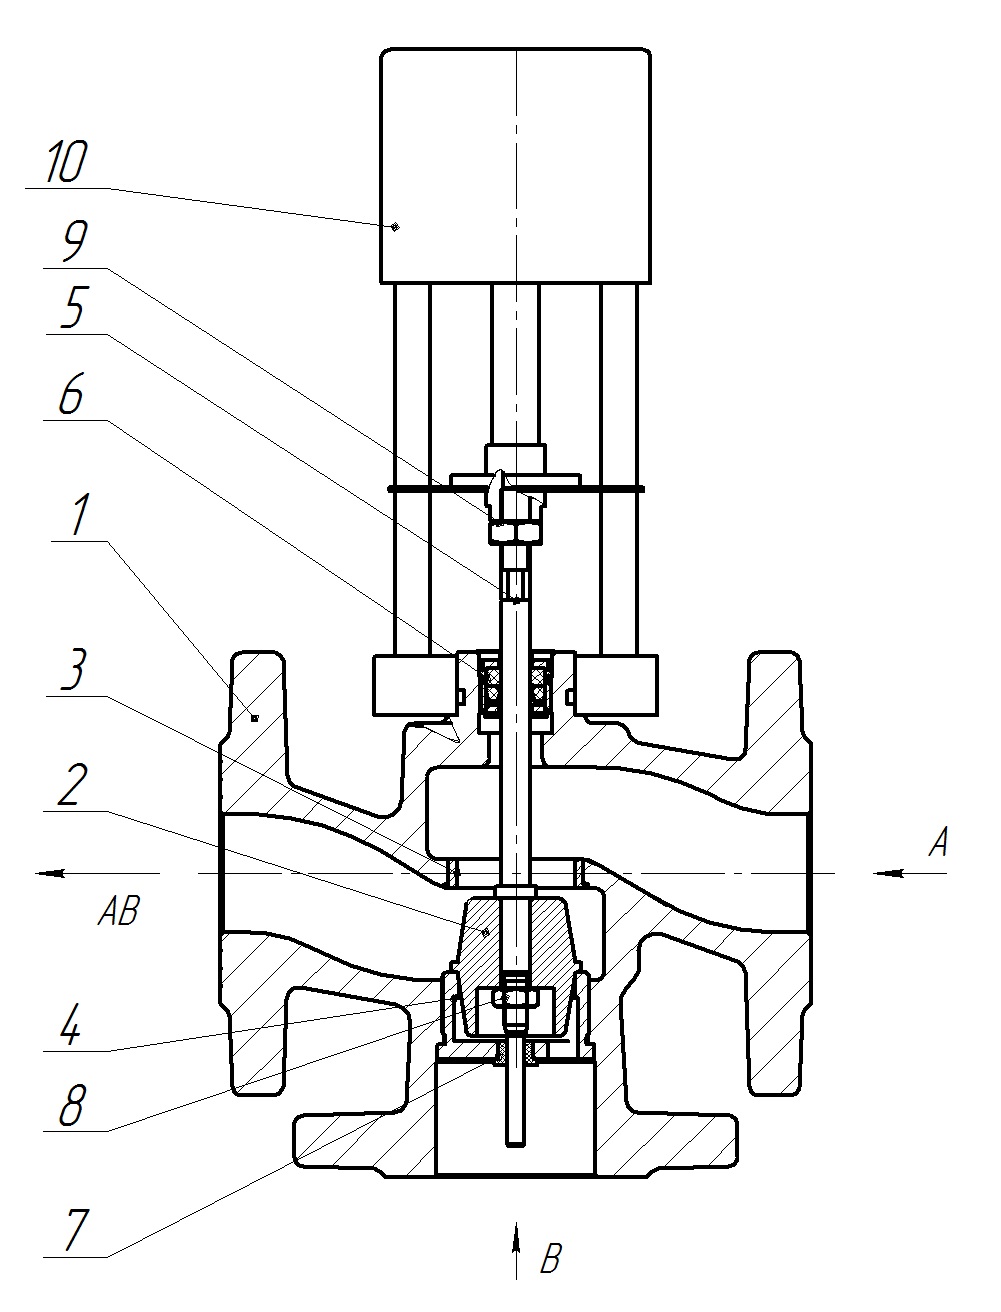 Клапан регулирующий трехходовой разделительный DN.ru 23ч901нж Ду65 Ру16 Kvs40 серый чугун СЧ20, фланцевый, Tmax до 150°С с электроприводом Катрабел TW-3000-XD220